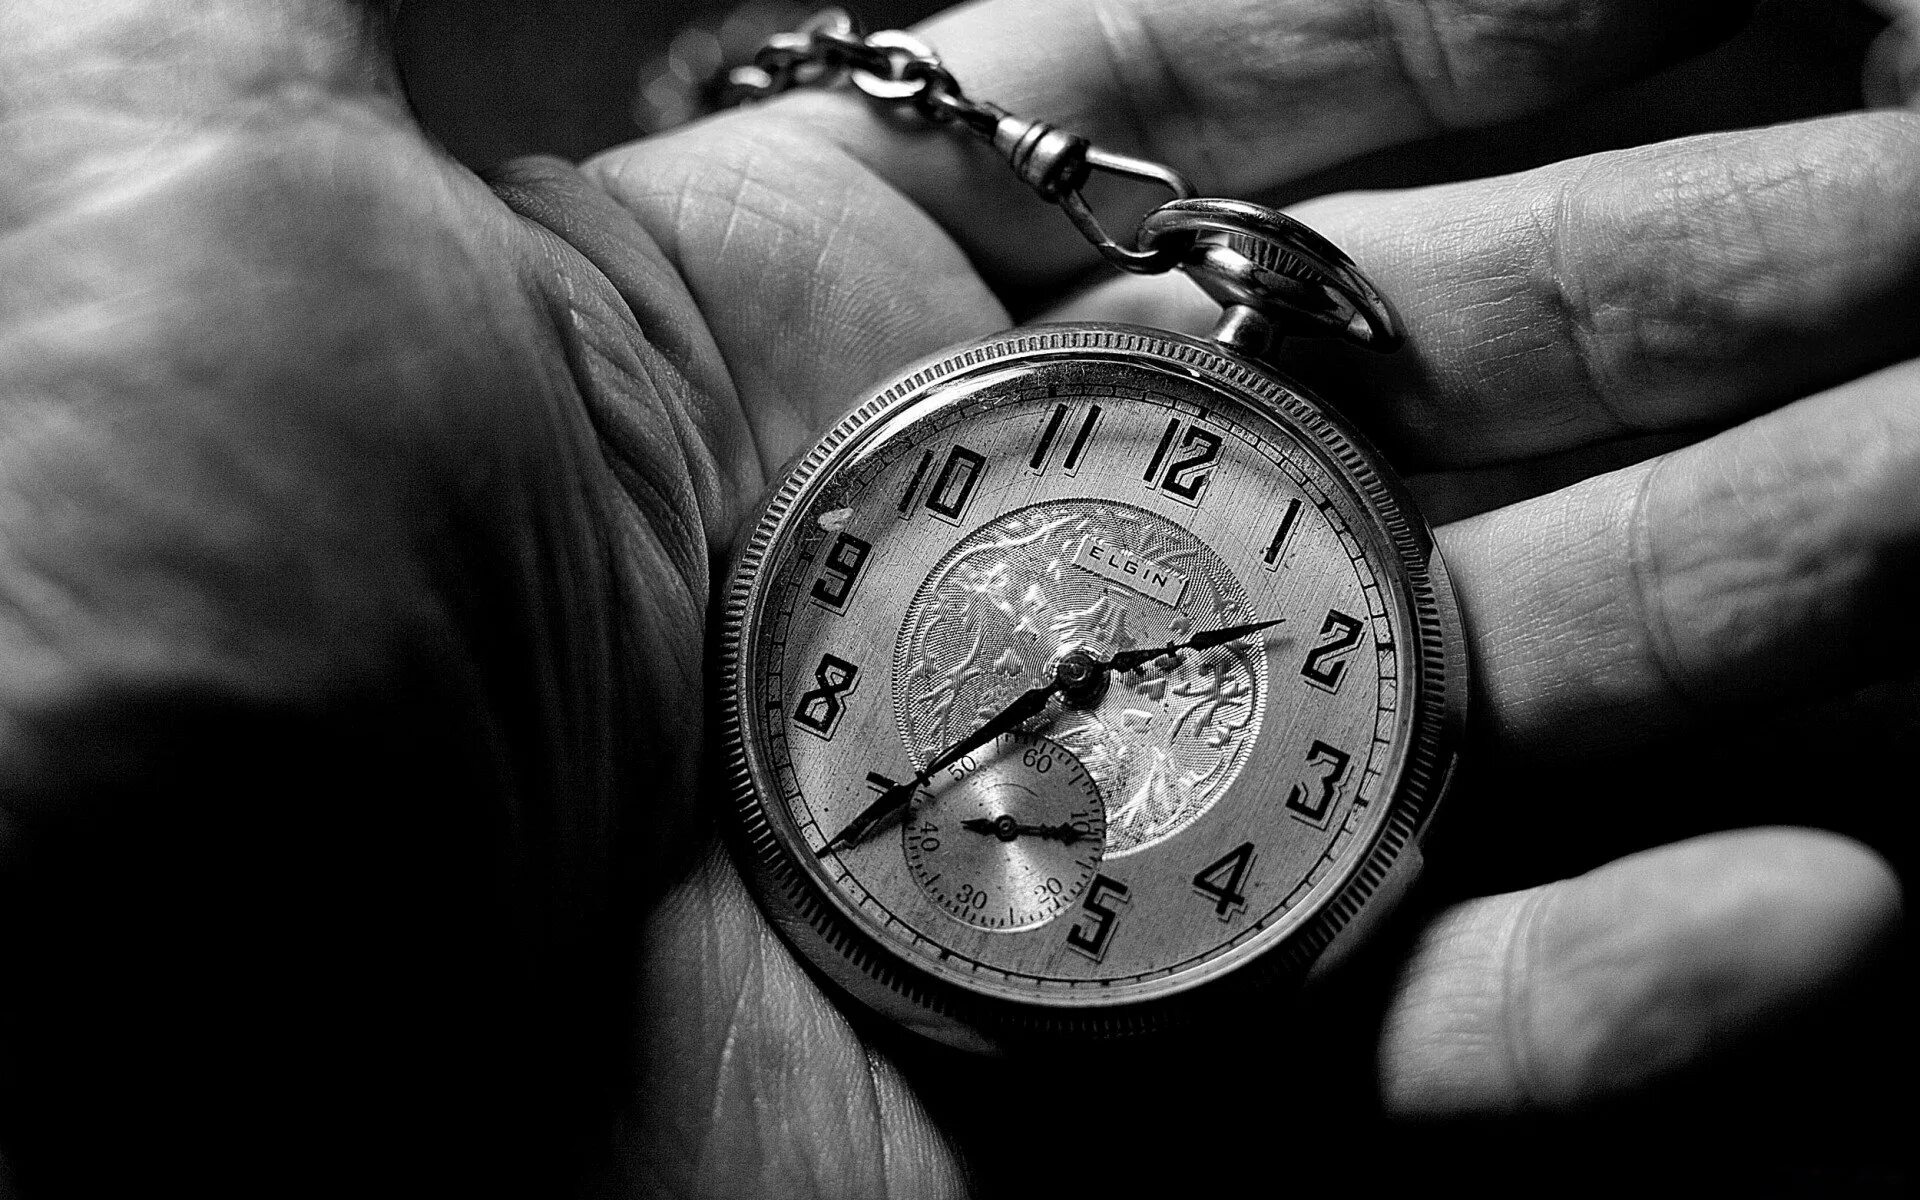 Карманные часы в руке. Старые часы на руку. Красивые высказывания о времени. Часы на цепочке. Со временем просто или